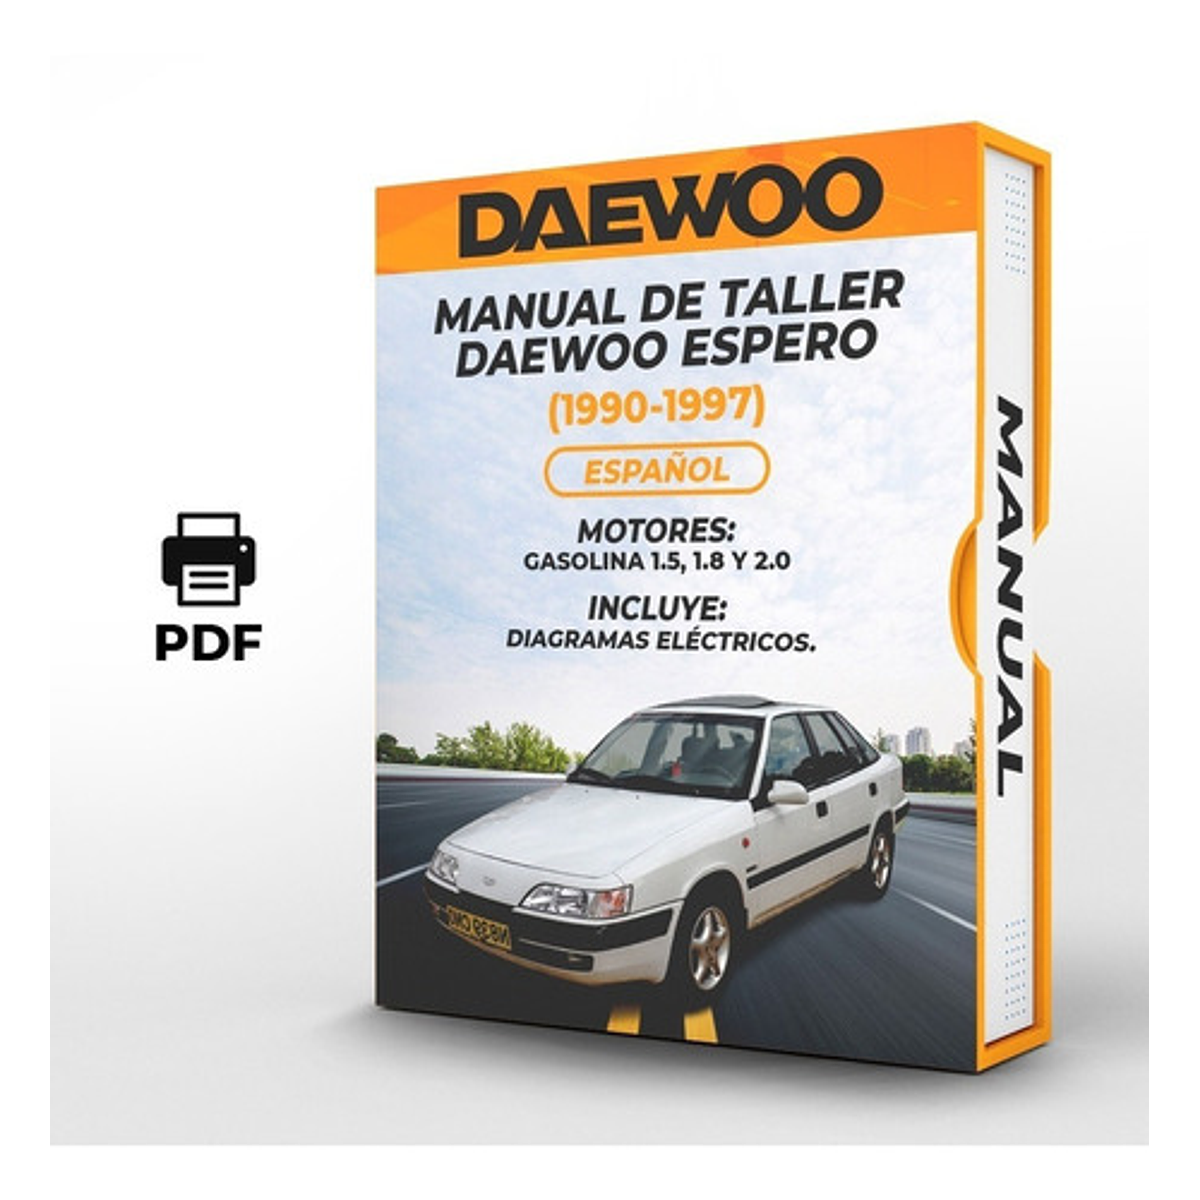 Manual de Taller Daewoo Espero (1990-1997) Español